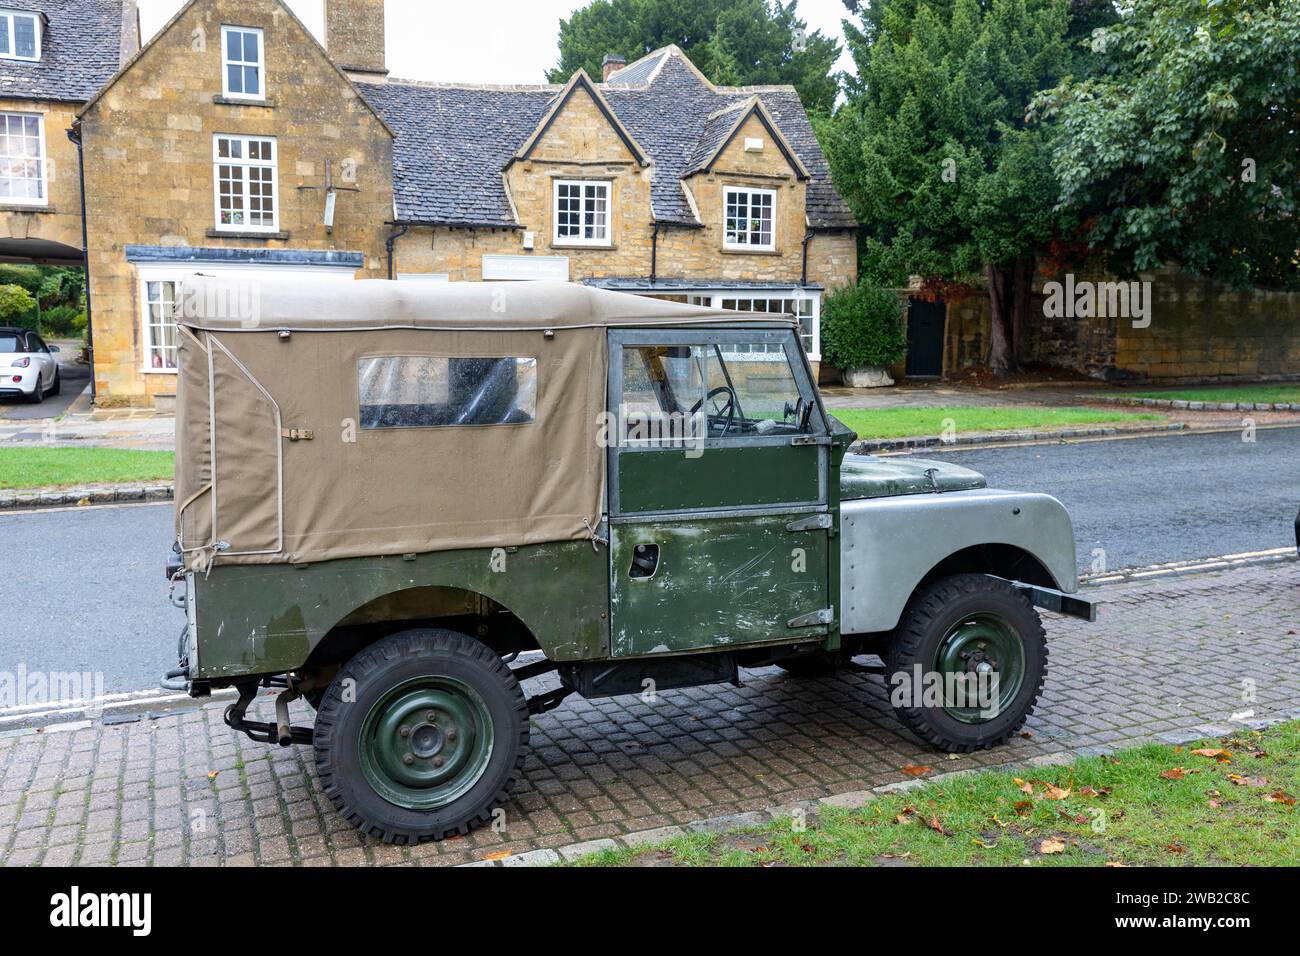 Veicolo Land Rover serie 1 classico parcheggiato nel villaggio di Broadway, Cotswolds, Inghilterra, l'auto ha sostituito i parafanghi anteriori e la tela marrone, Inghilterra, Regno Unito Foto Stock